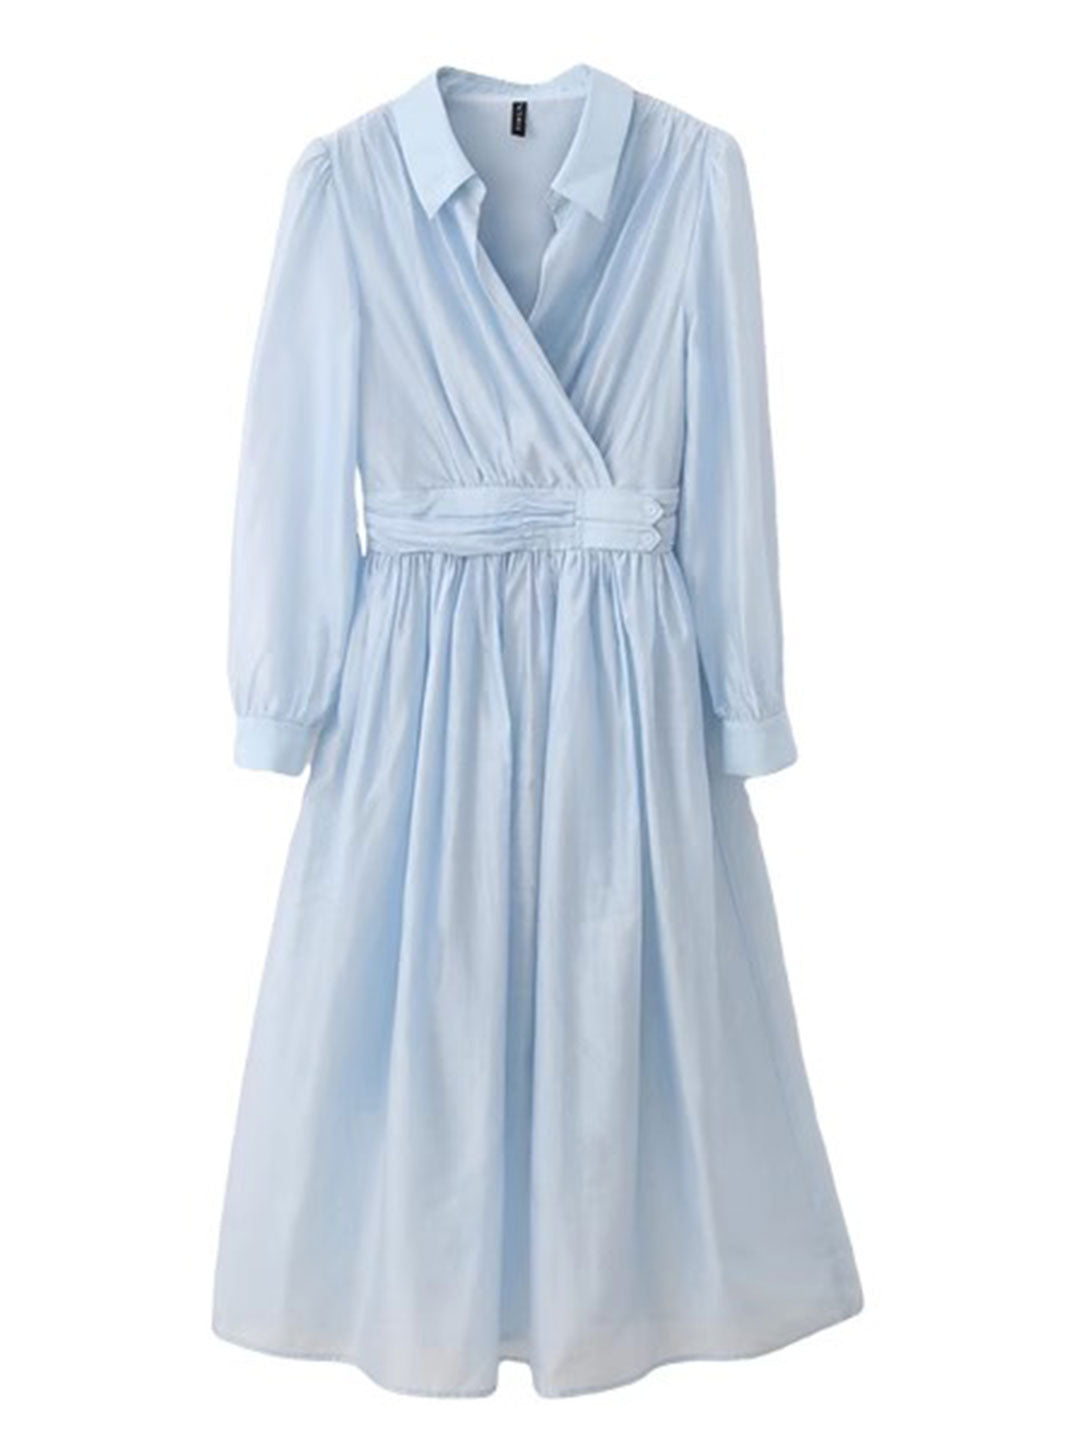 Kayla Retro Puff Sleeve Chiffon Dress-Blue